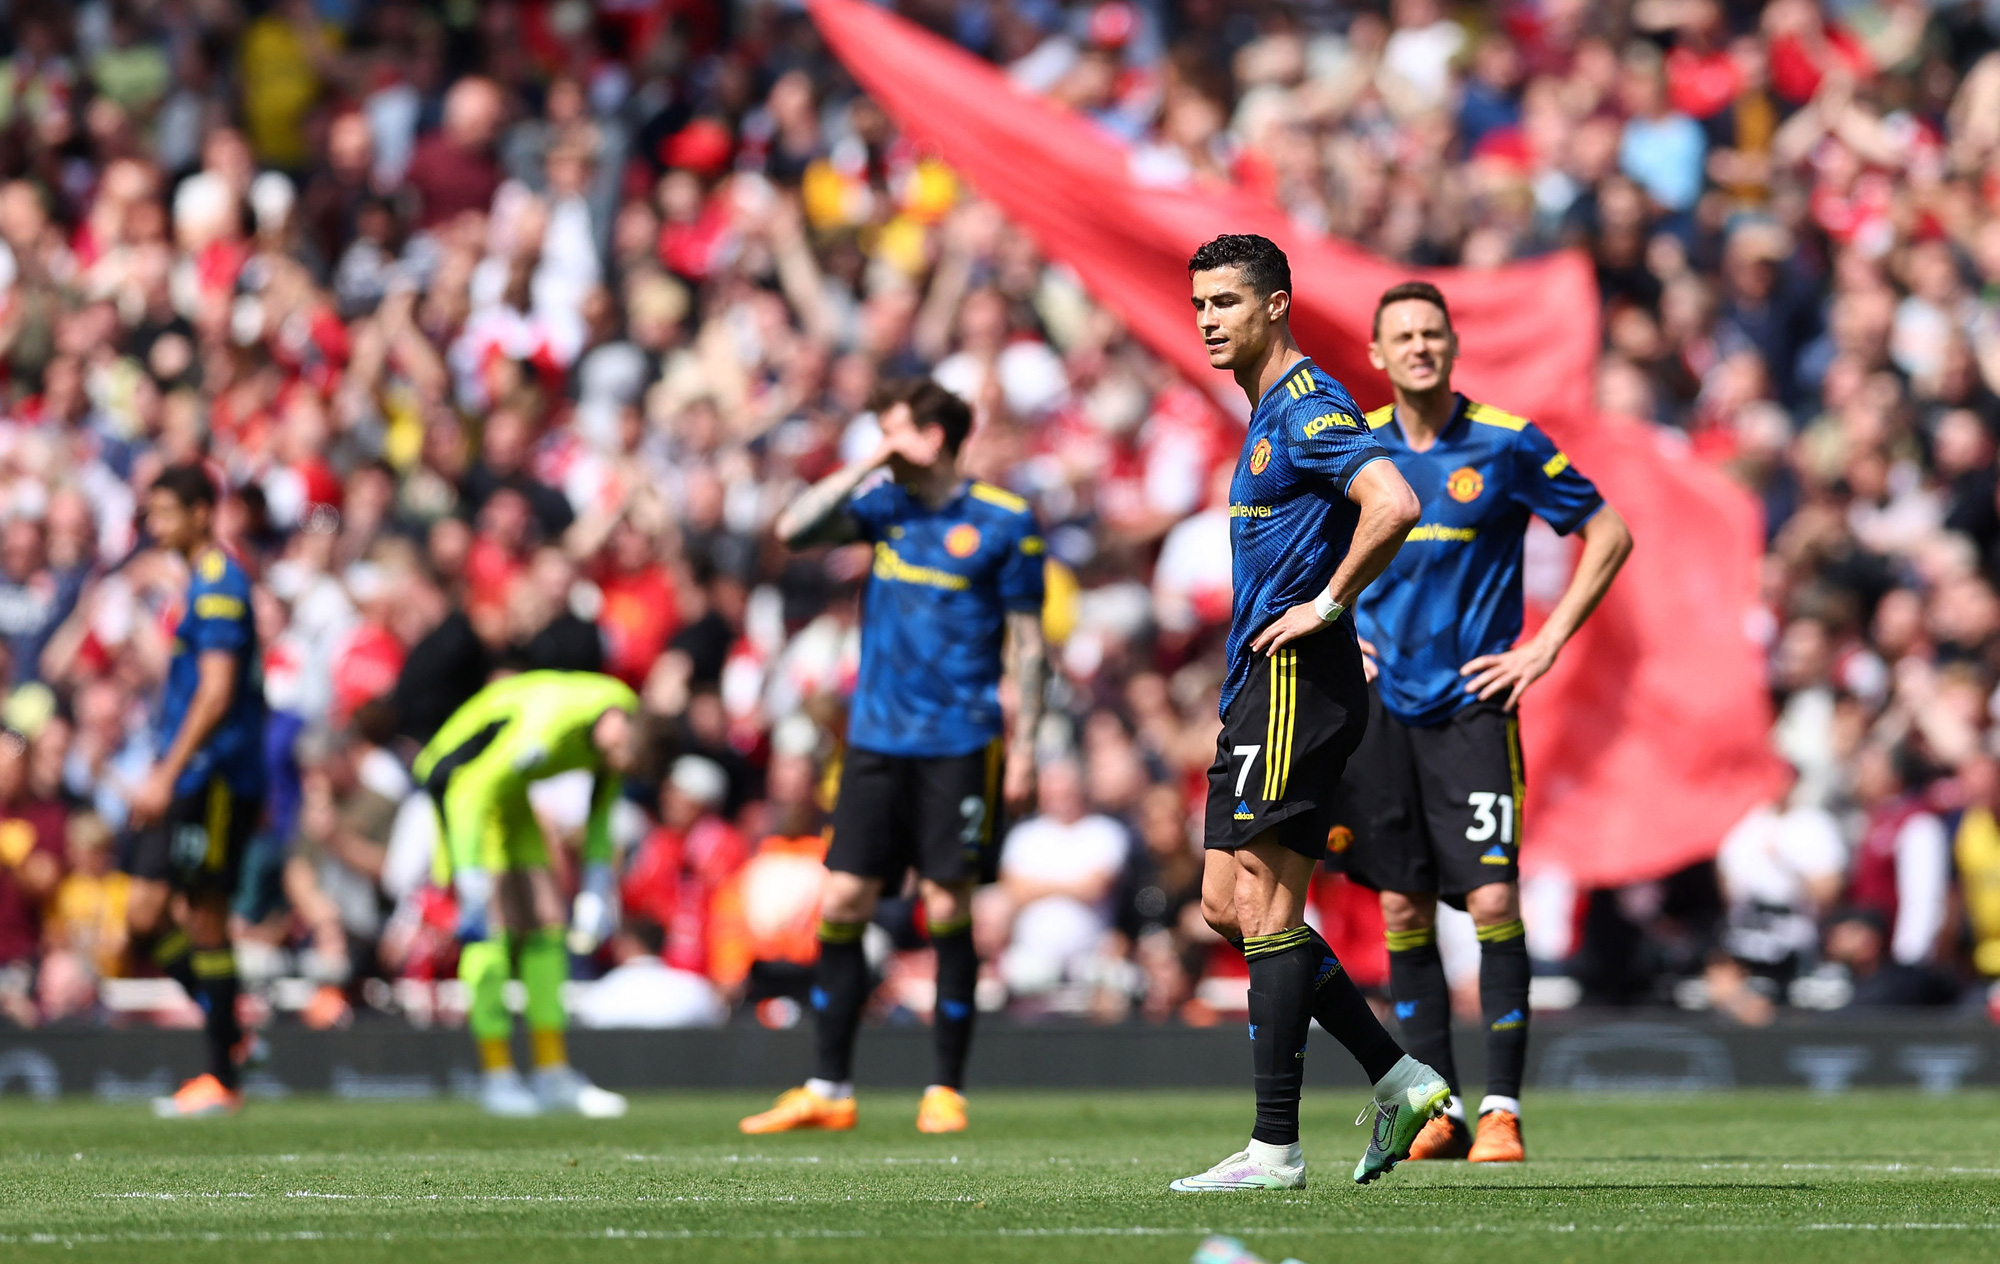 Man United lại khiến các fan thất vọng khi thua đậm Arsenal 1-3 - Ảnh 8.